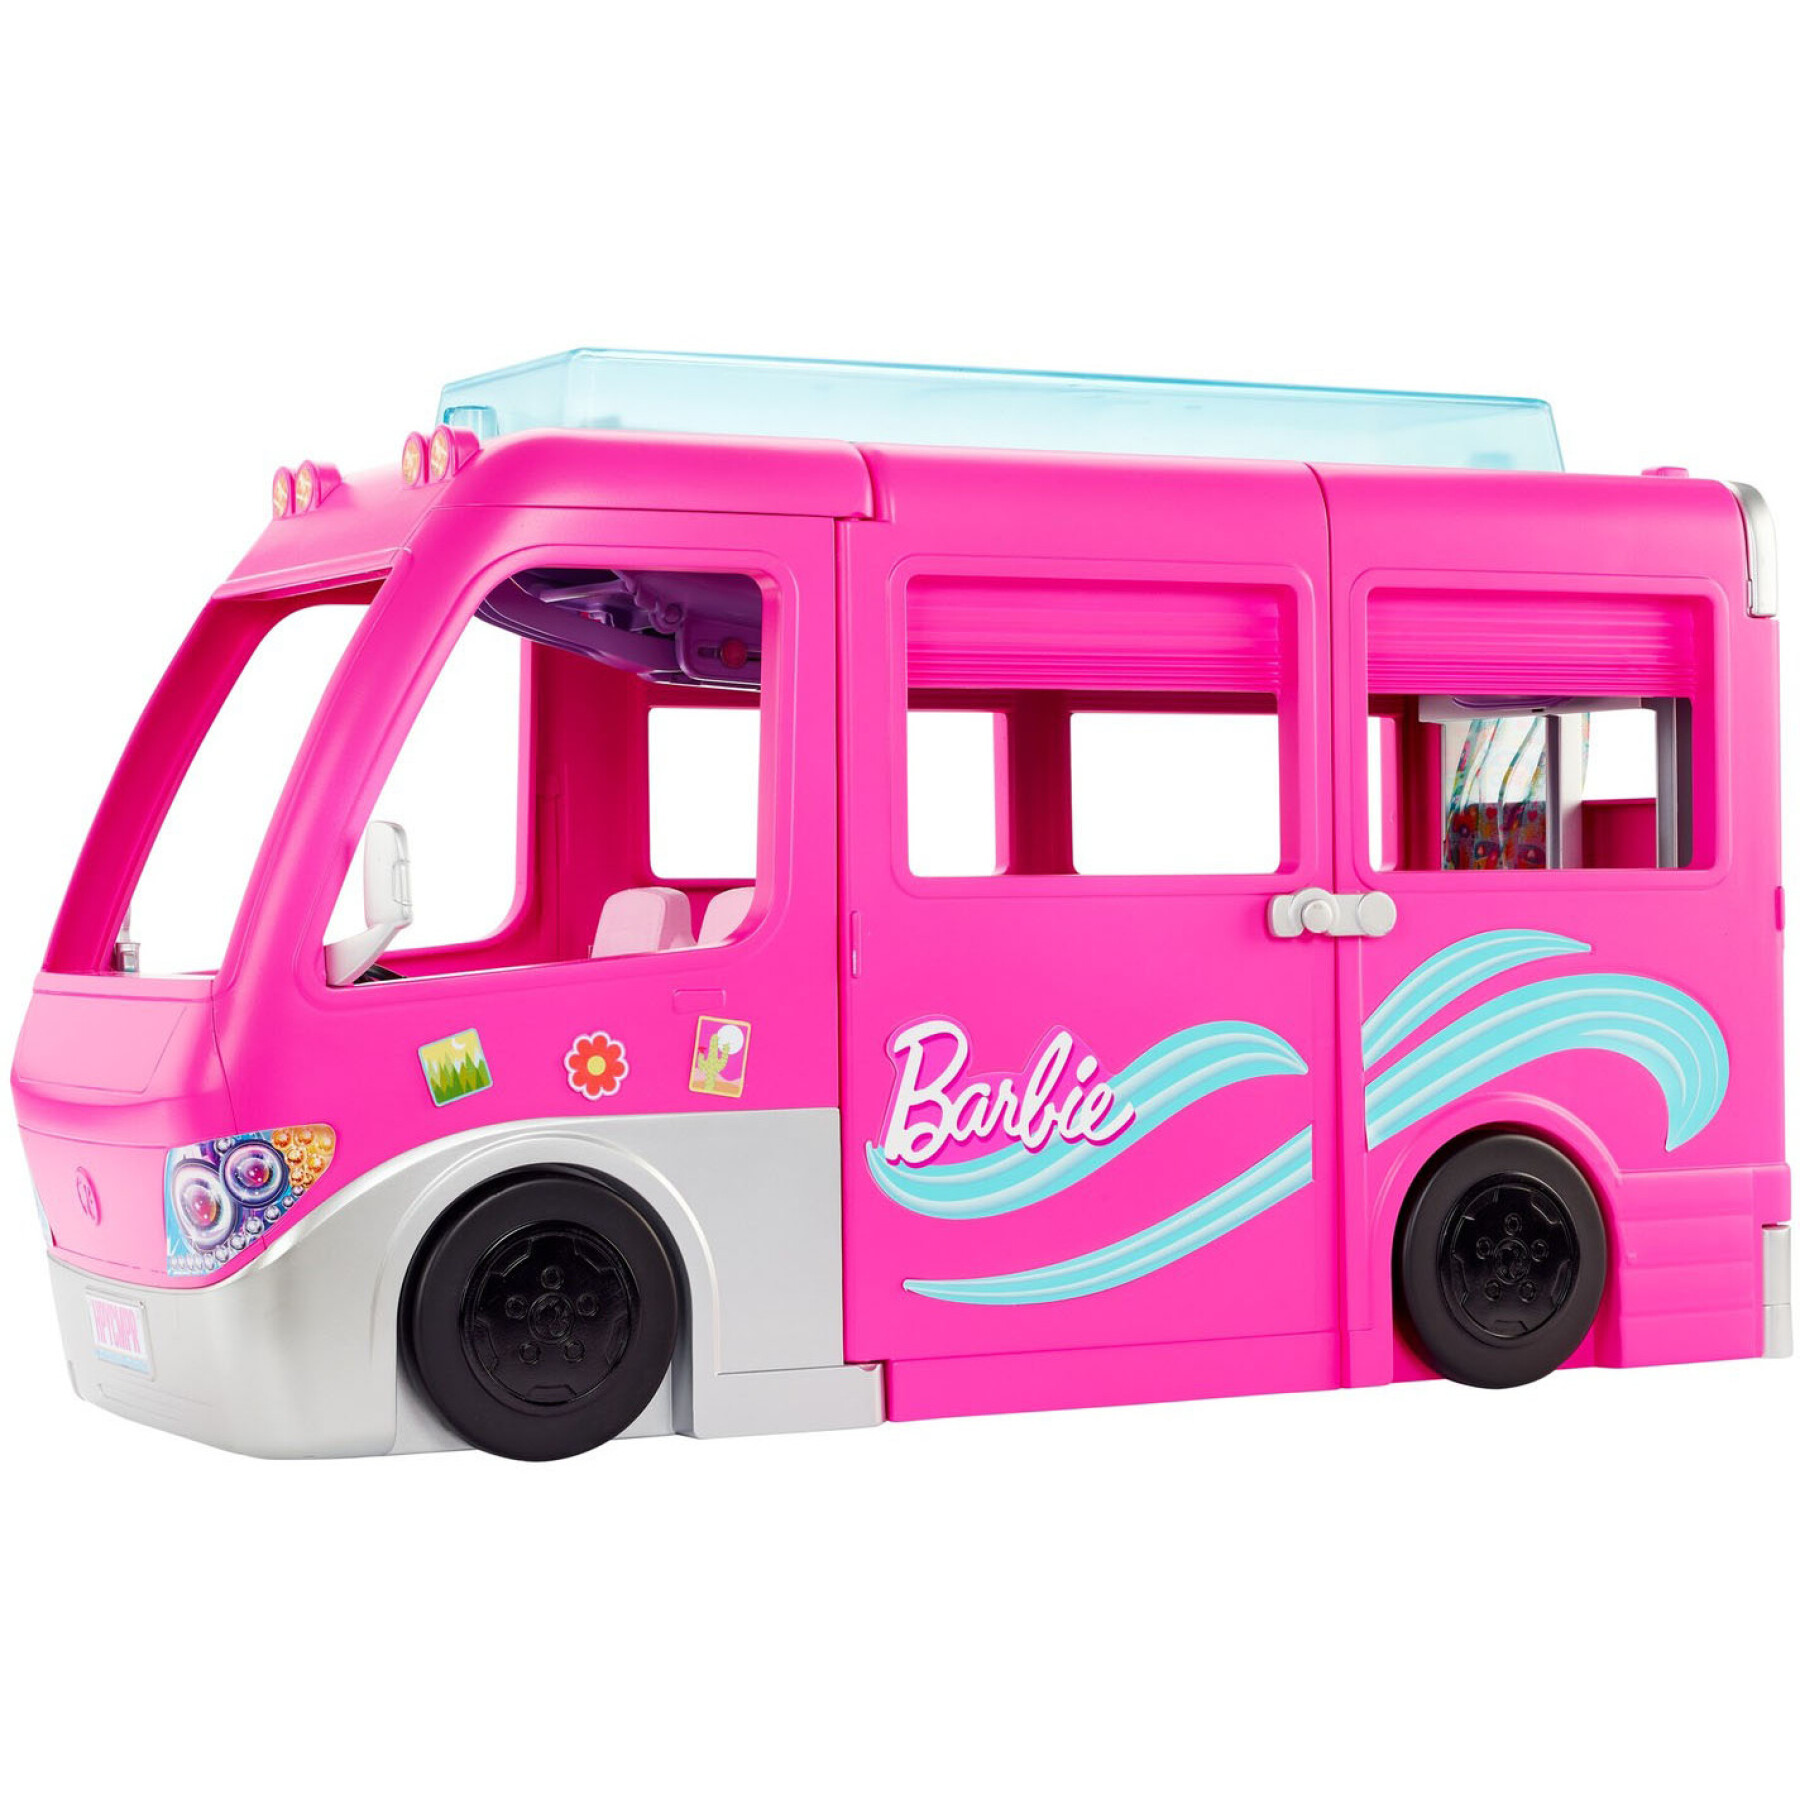 Bambola Barbie con camper decappottabile Mattel France Mega